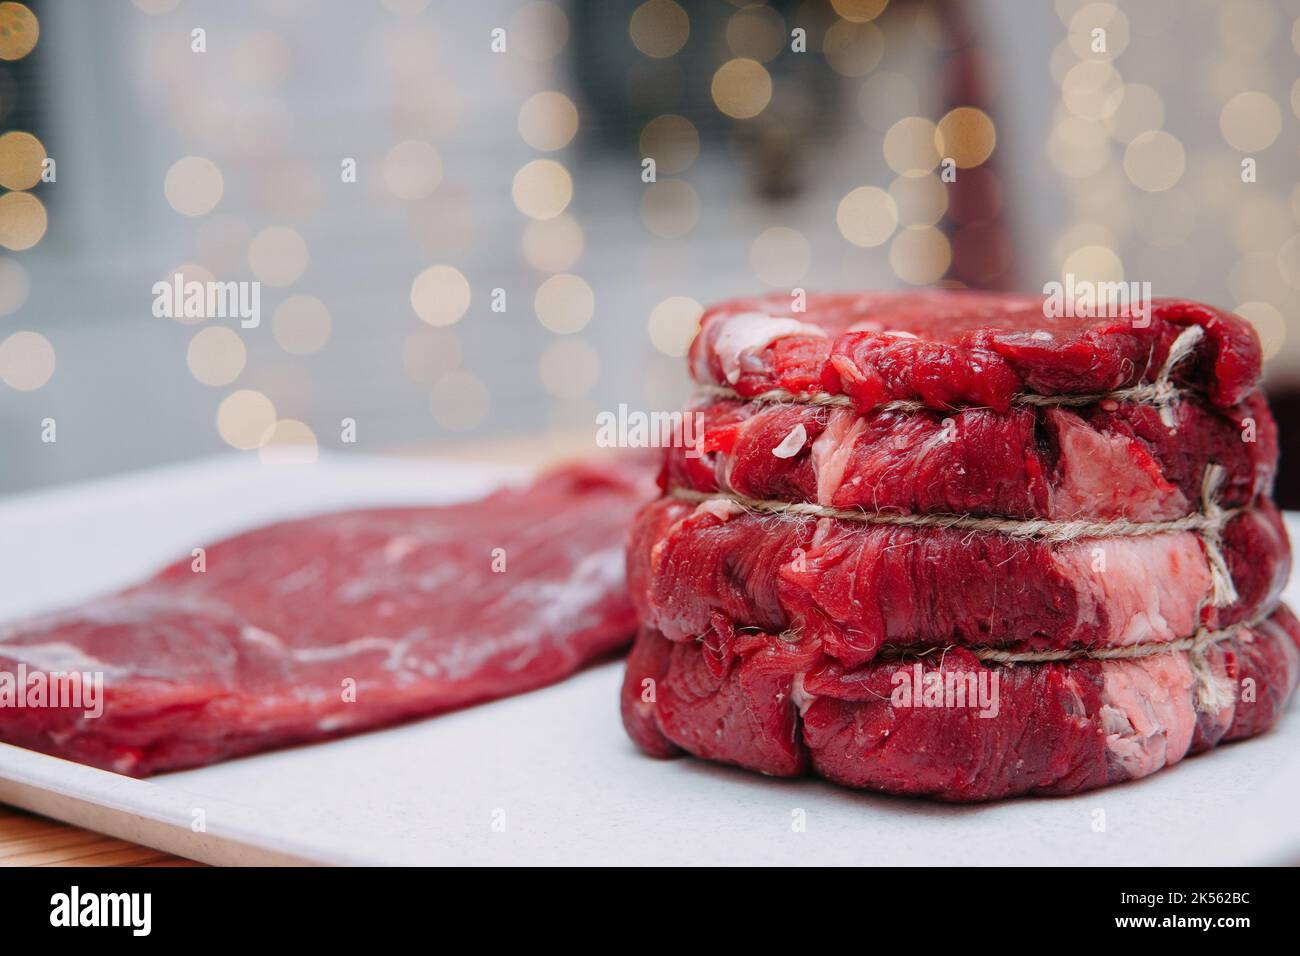 Un morceau de bœuf vieilli sur une assiette. Gros plan, mise au point sélective. Viande pour steaks en cours de cuisine. Banque D'Images